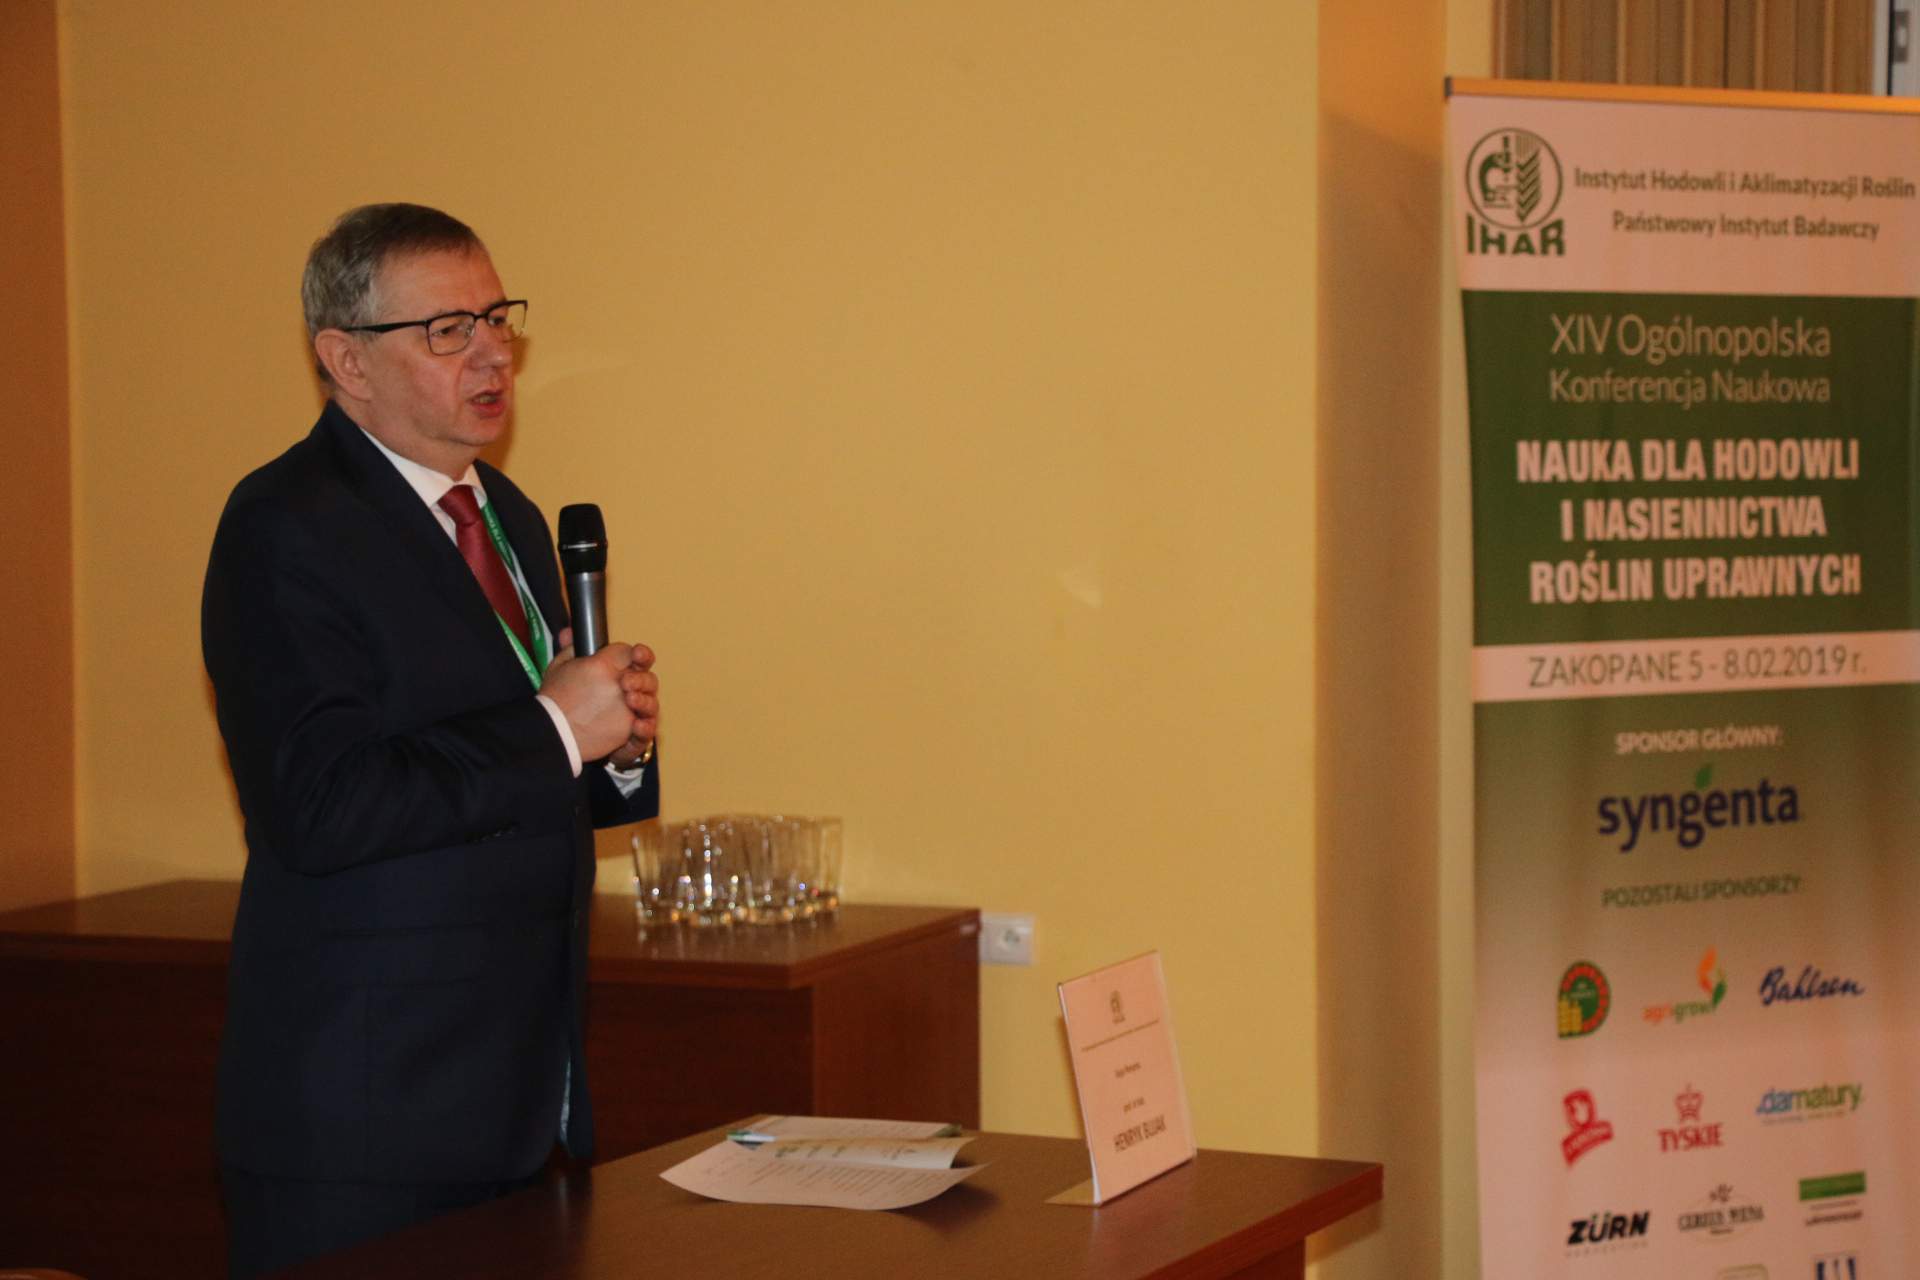 Konferencję otworzył dyrektor IHAR-PIB – prof. Henryk Jan Bujak